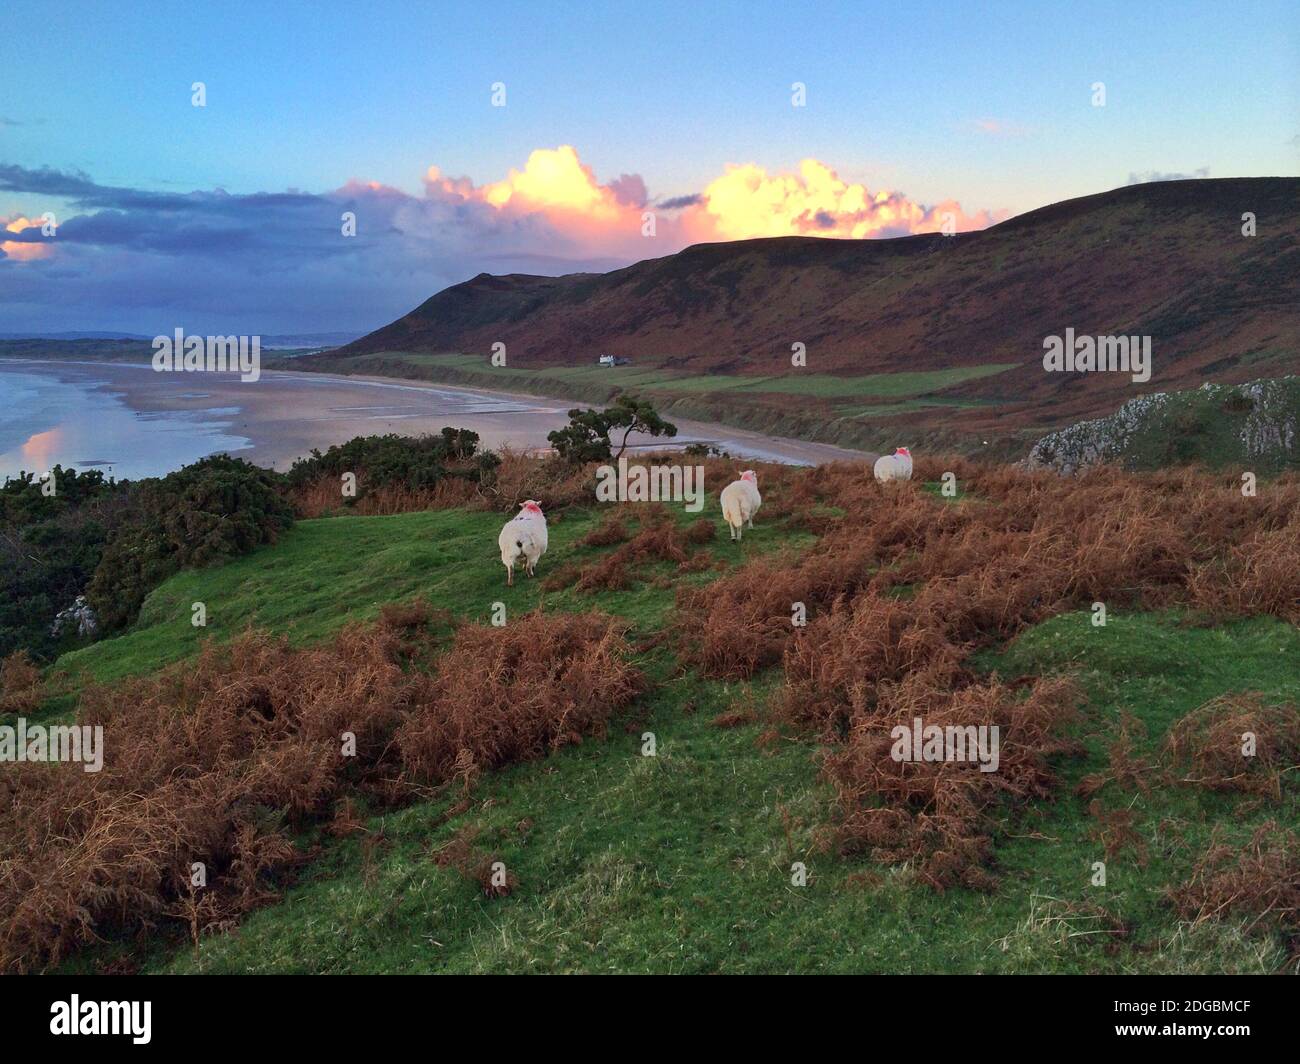 Pecore che pascolano su una scogliera, Rhossili Bay, Gower Peninsula, Galles, Regno Unito Foto Stock